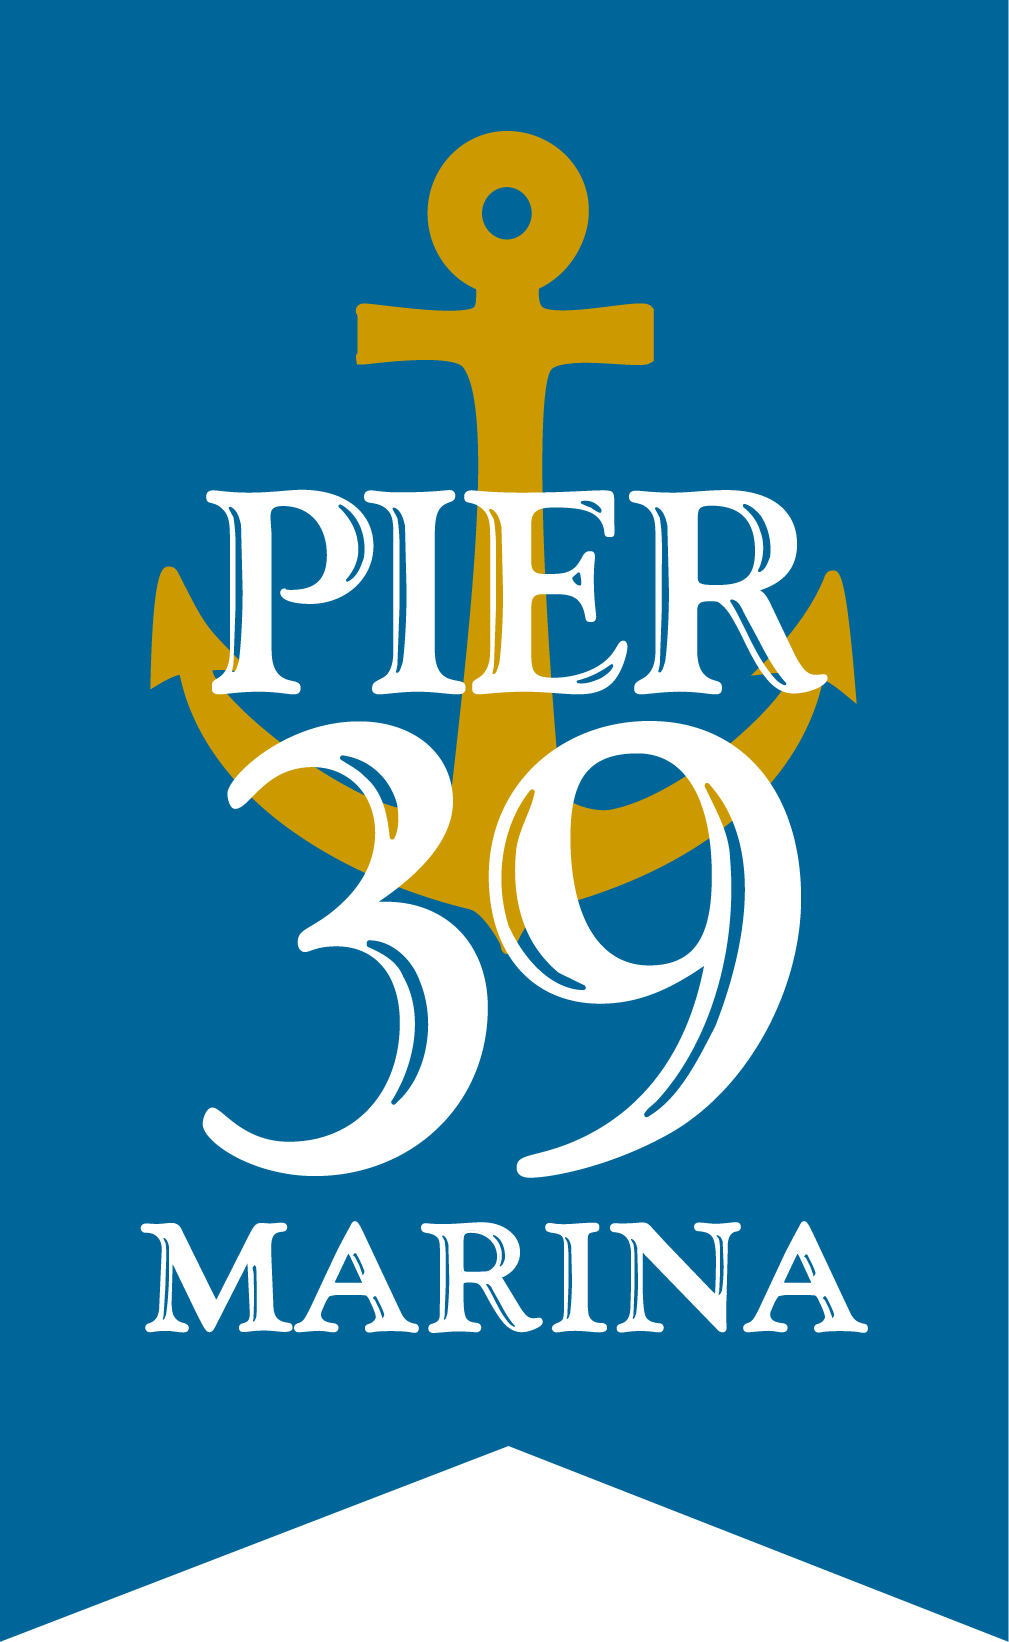 marina logo